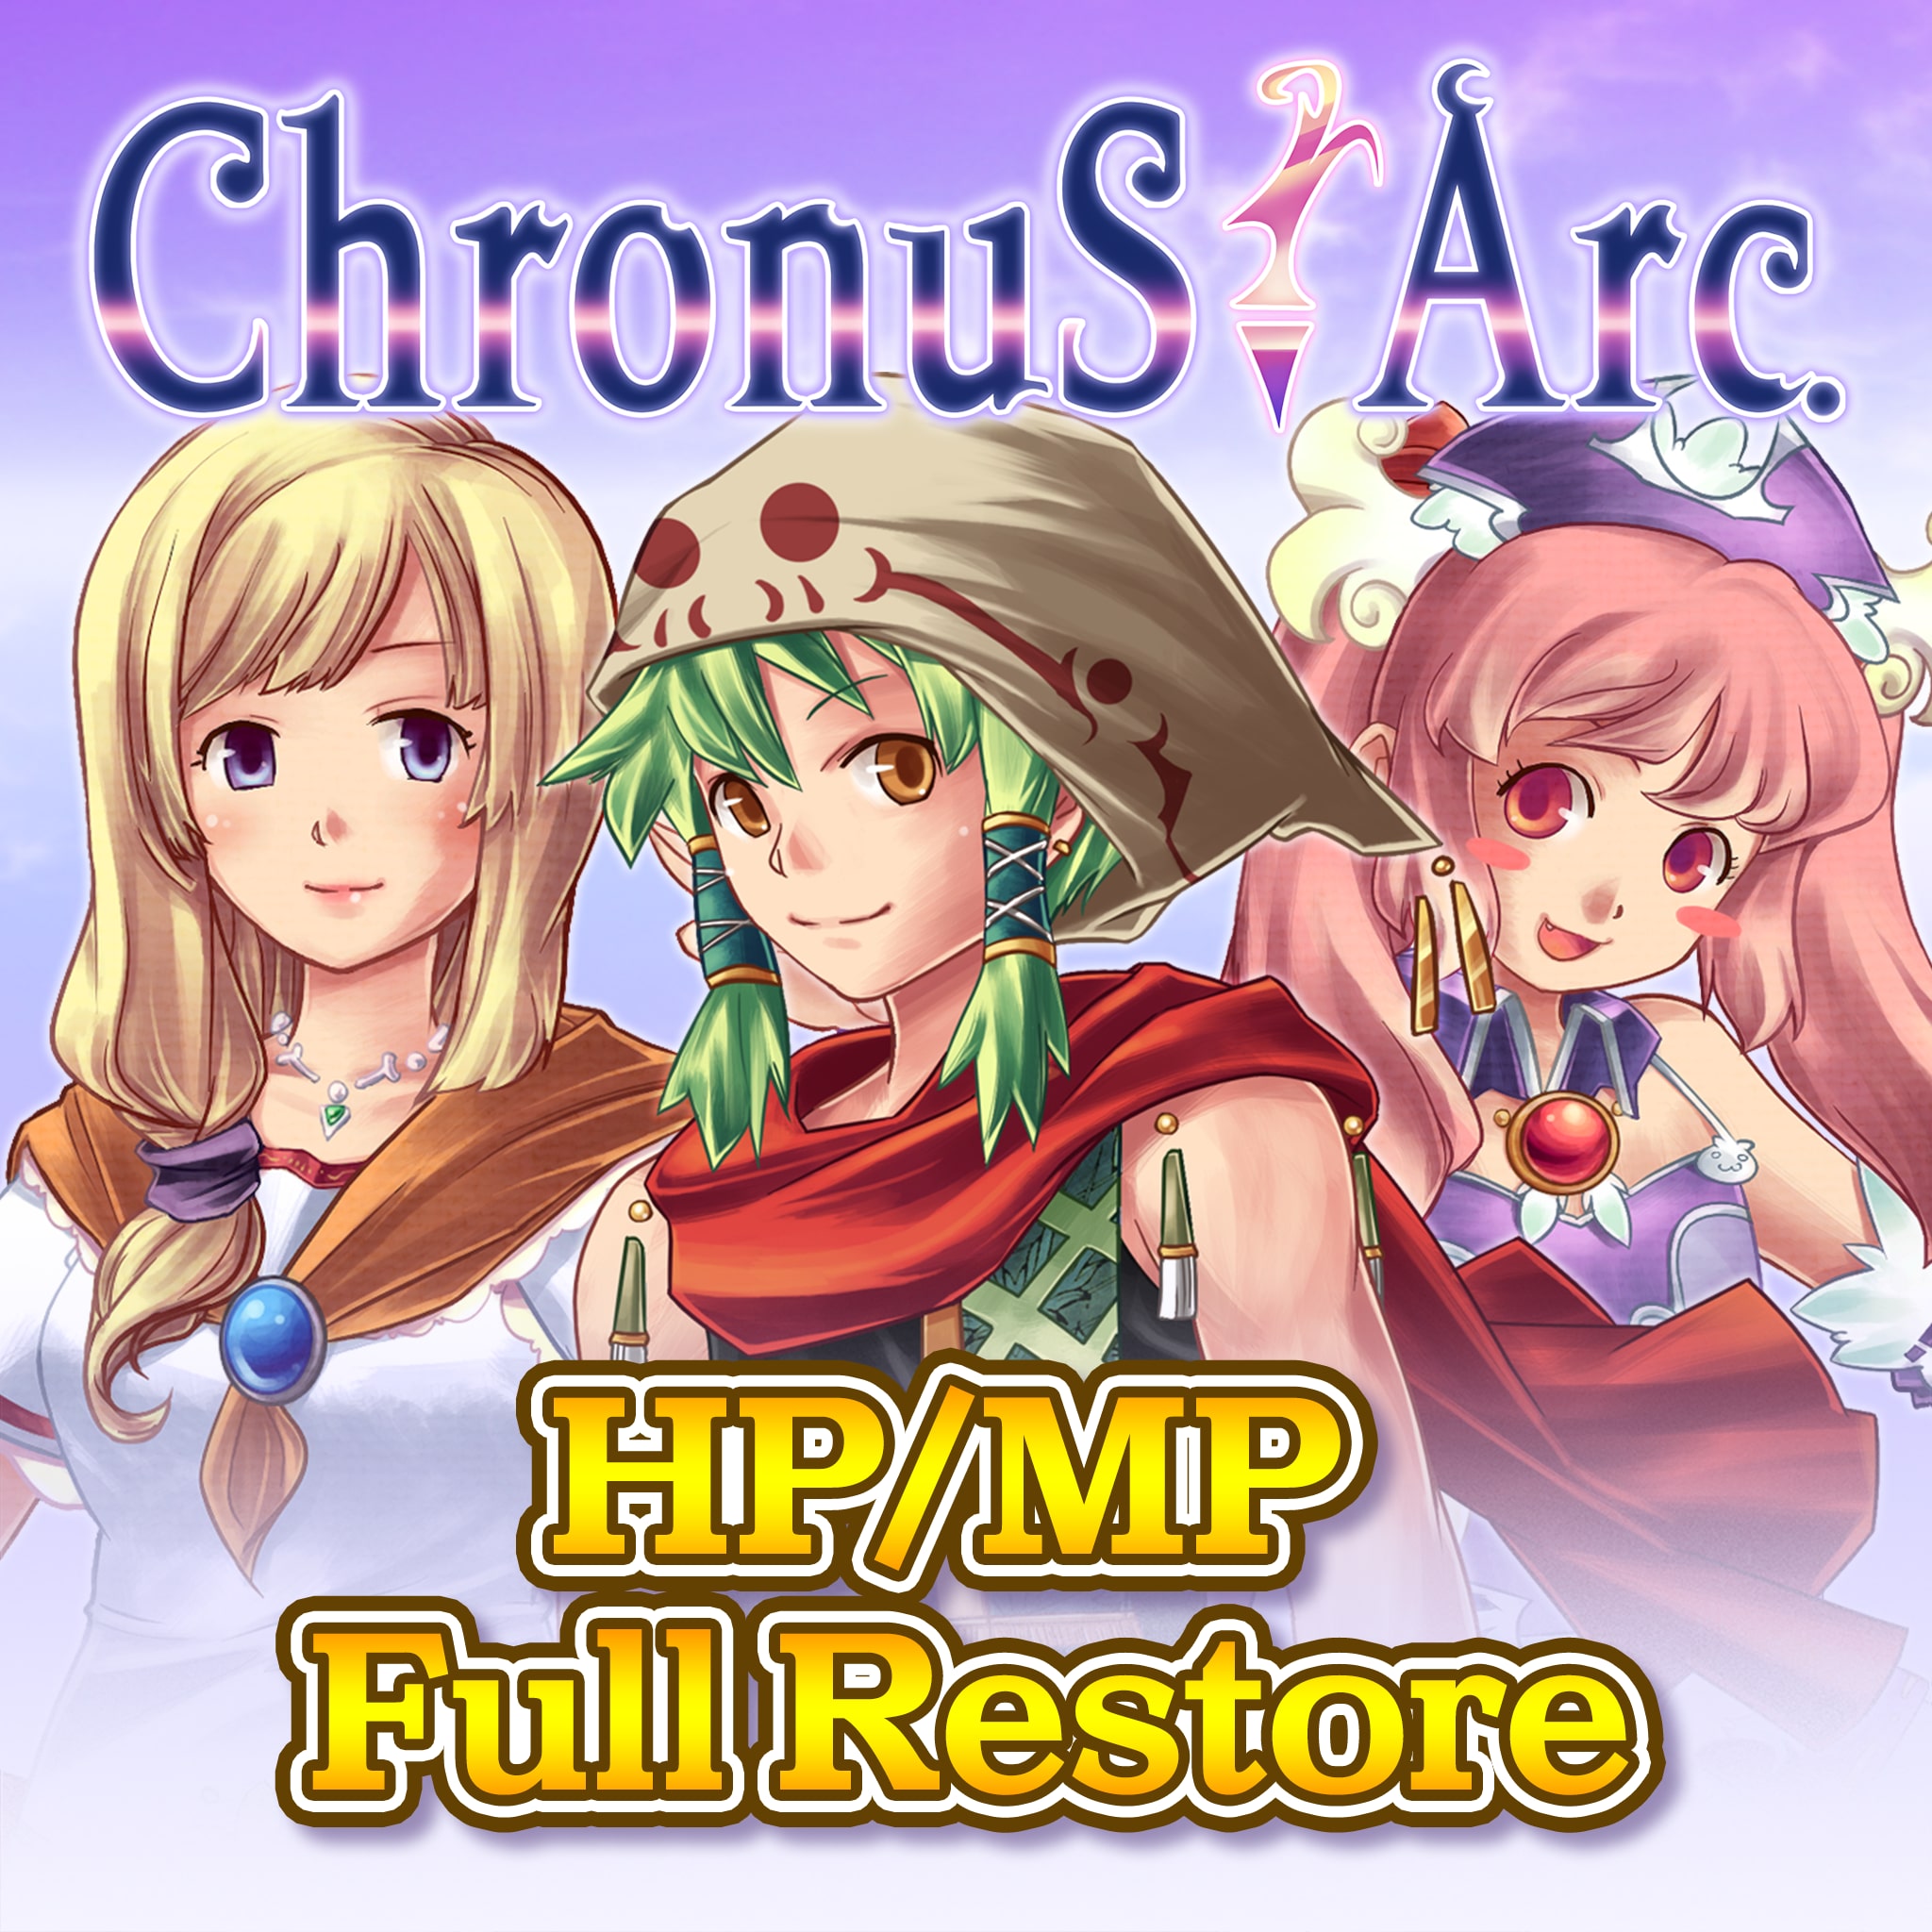 Full Restore - Chronus Arc